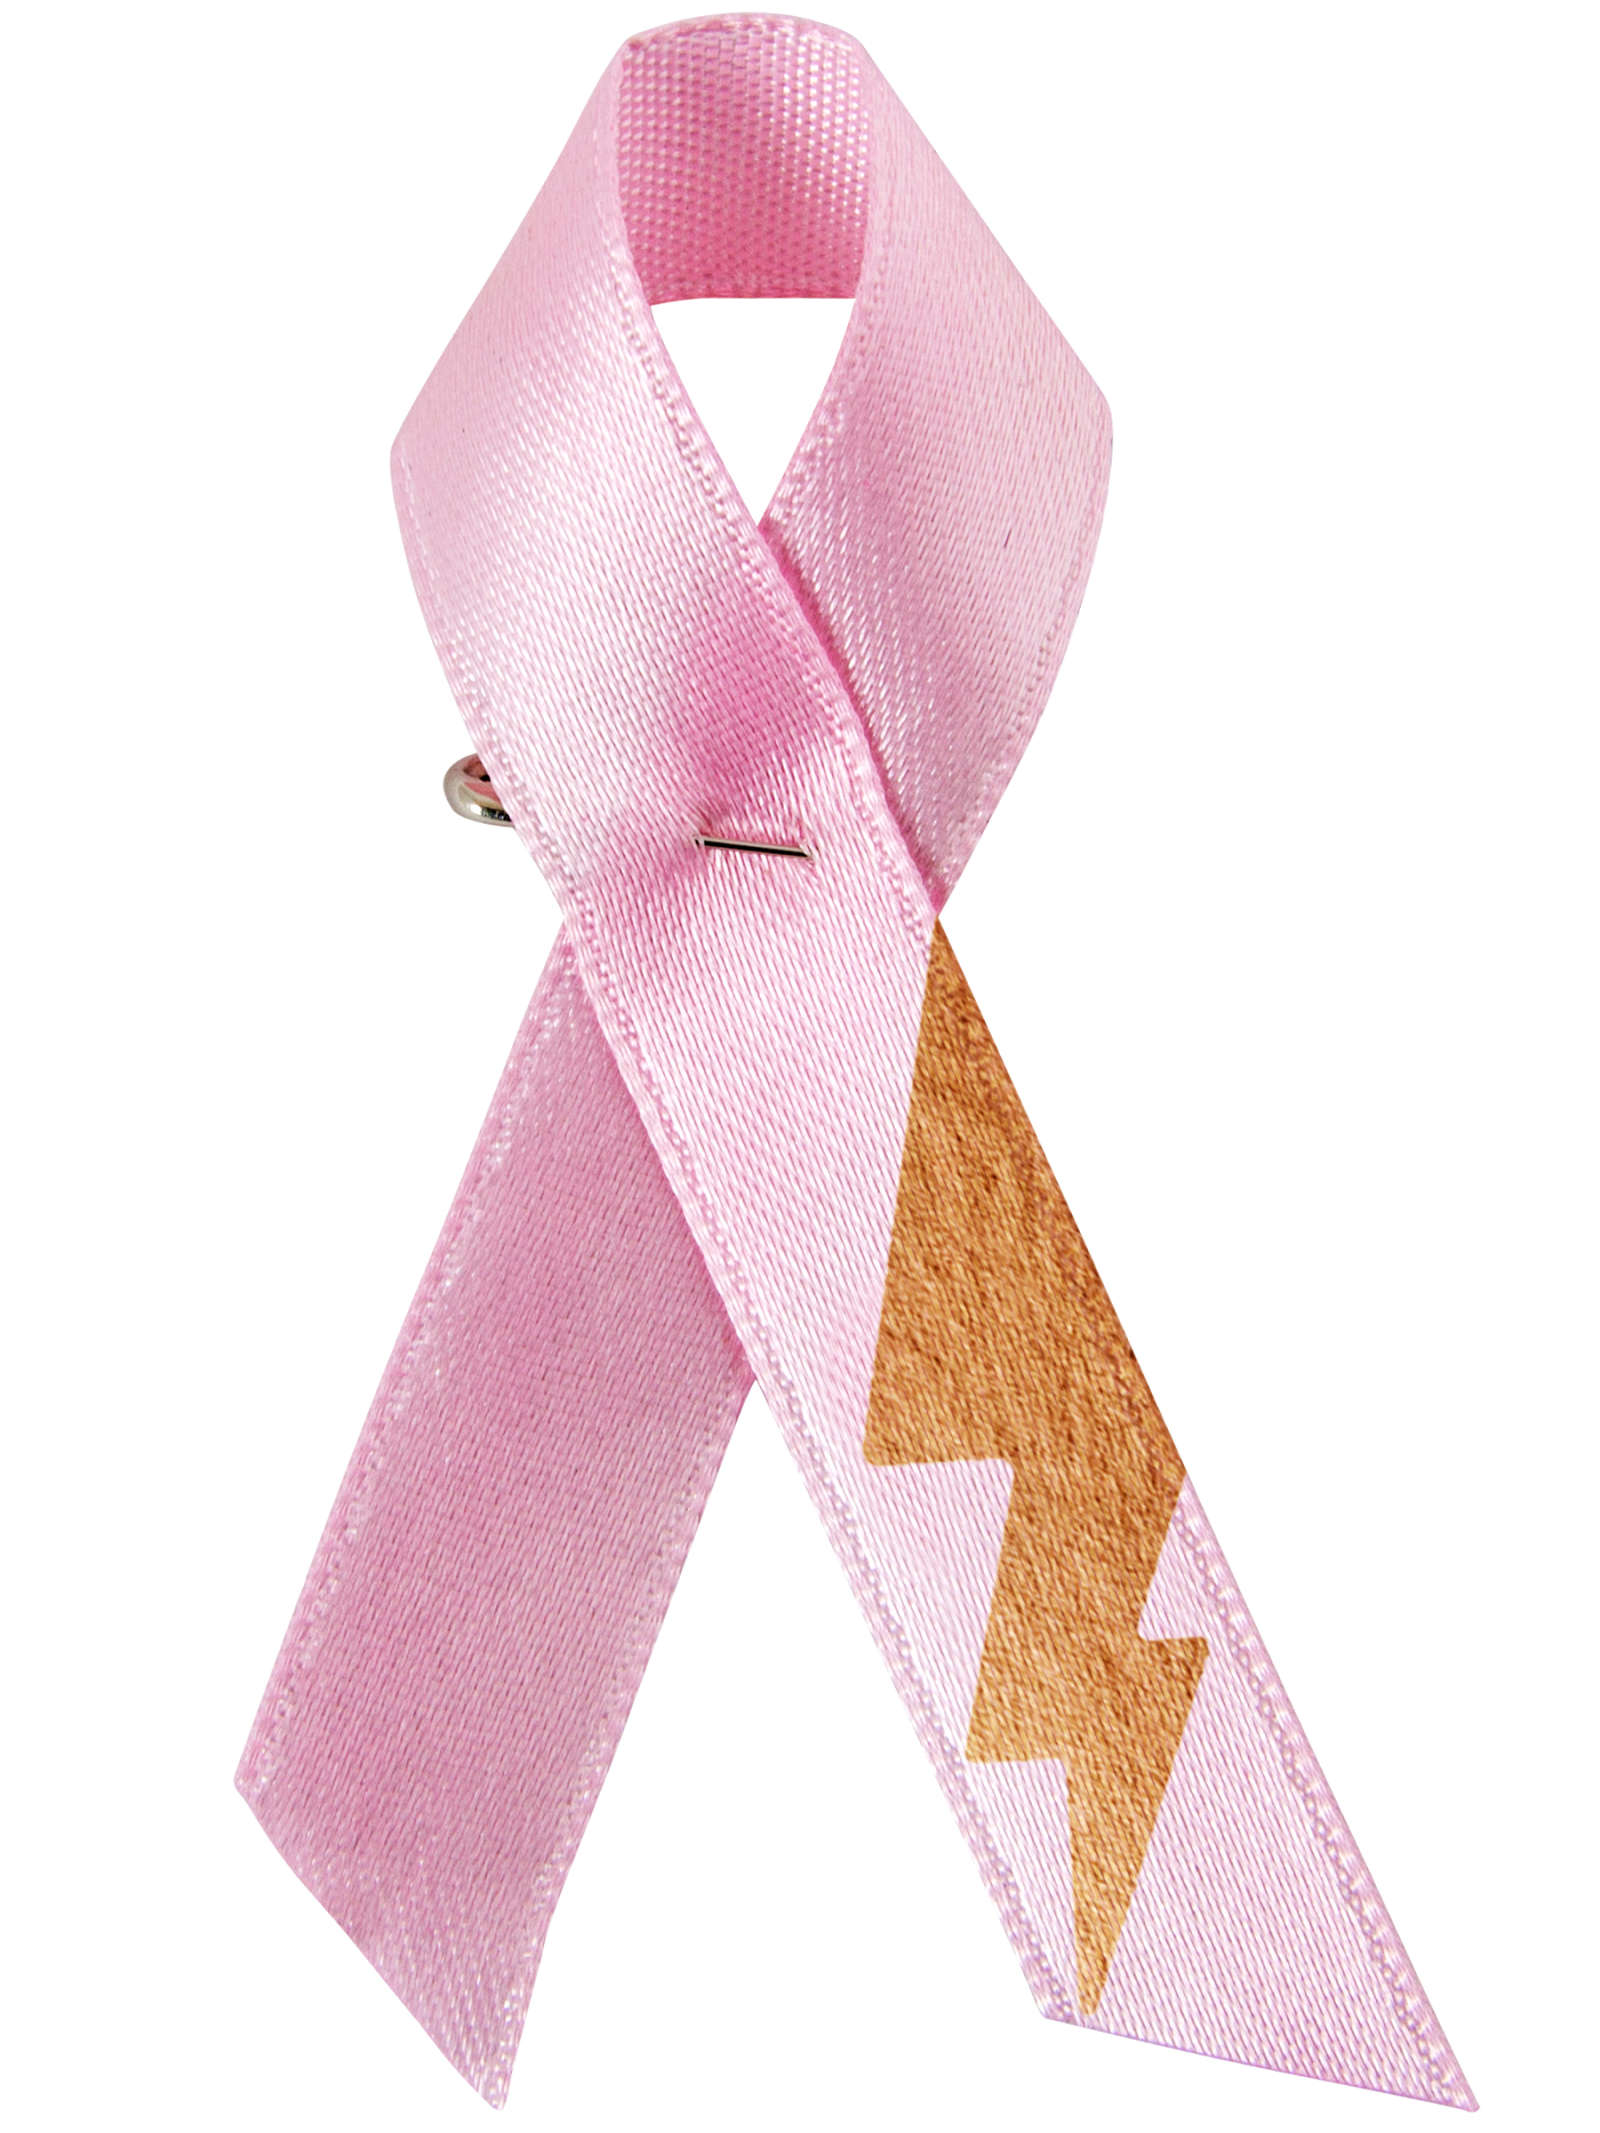 _Anna Puun suunnittelemassa Roosa nauhassa on salama, joka symboloi ihmisessä olevaa sisäistä voimaa. Roosa nauha -keräyksellä tuetaan naisten syöpien tutkimusta sekä syöpään sairastuneita ja heidän läheisiään._